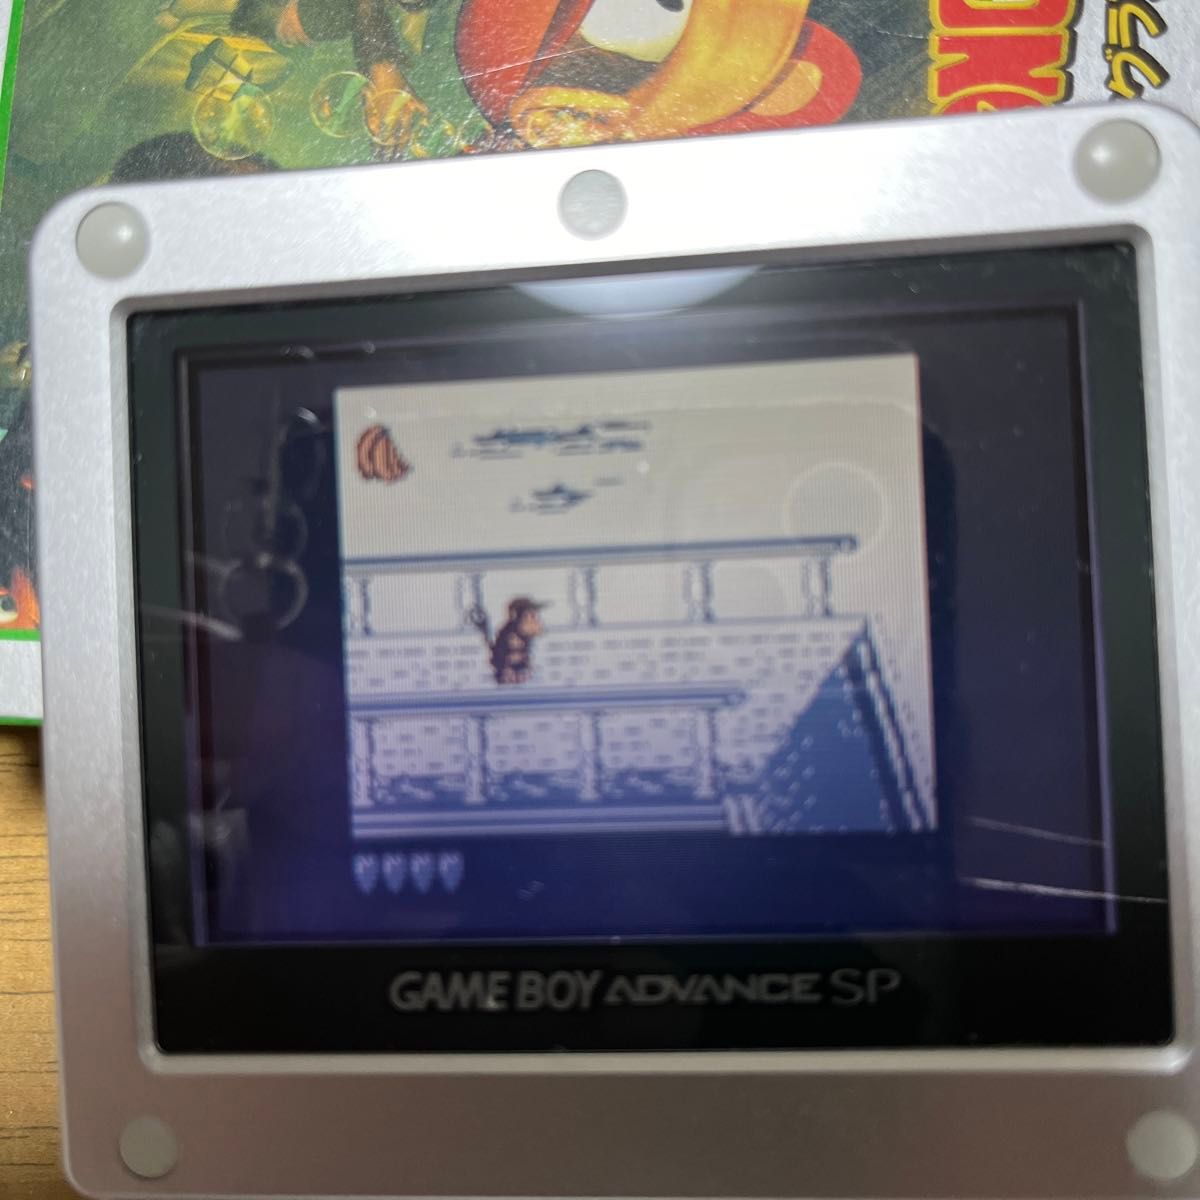 ゲームボーイ　ドンキーコング　ドンキーコングランド　ソフト２本セット　ニンテンドー　Nintendo 任天堂　レトロゲームゲーム